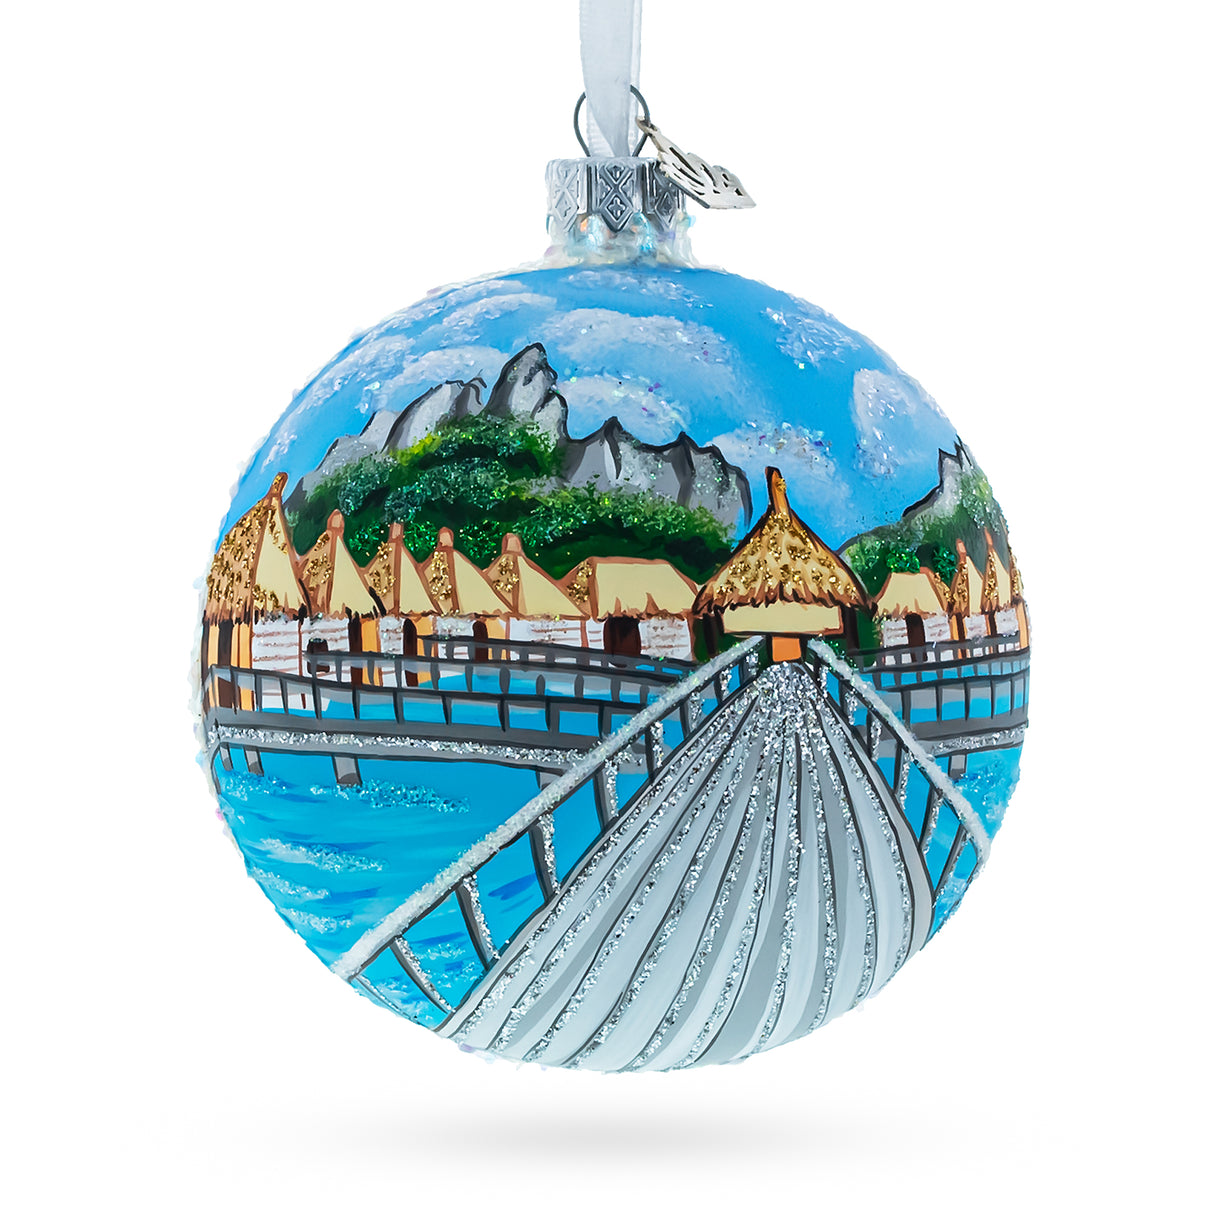 Bora Bora, French Polynesia Glass Ball Christmas Ornament 4 Inches in Multi color, Round shape